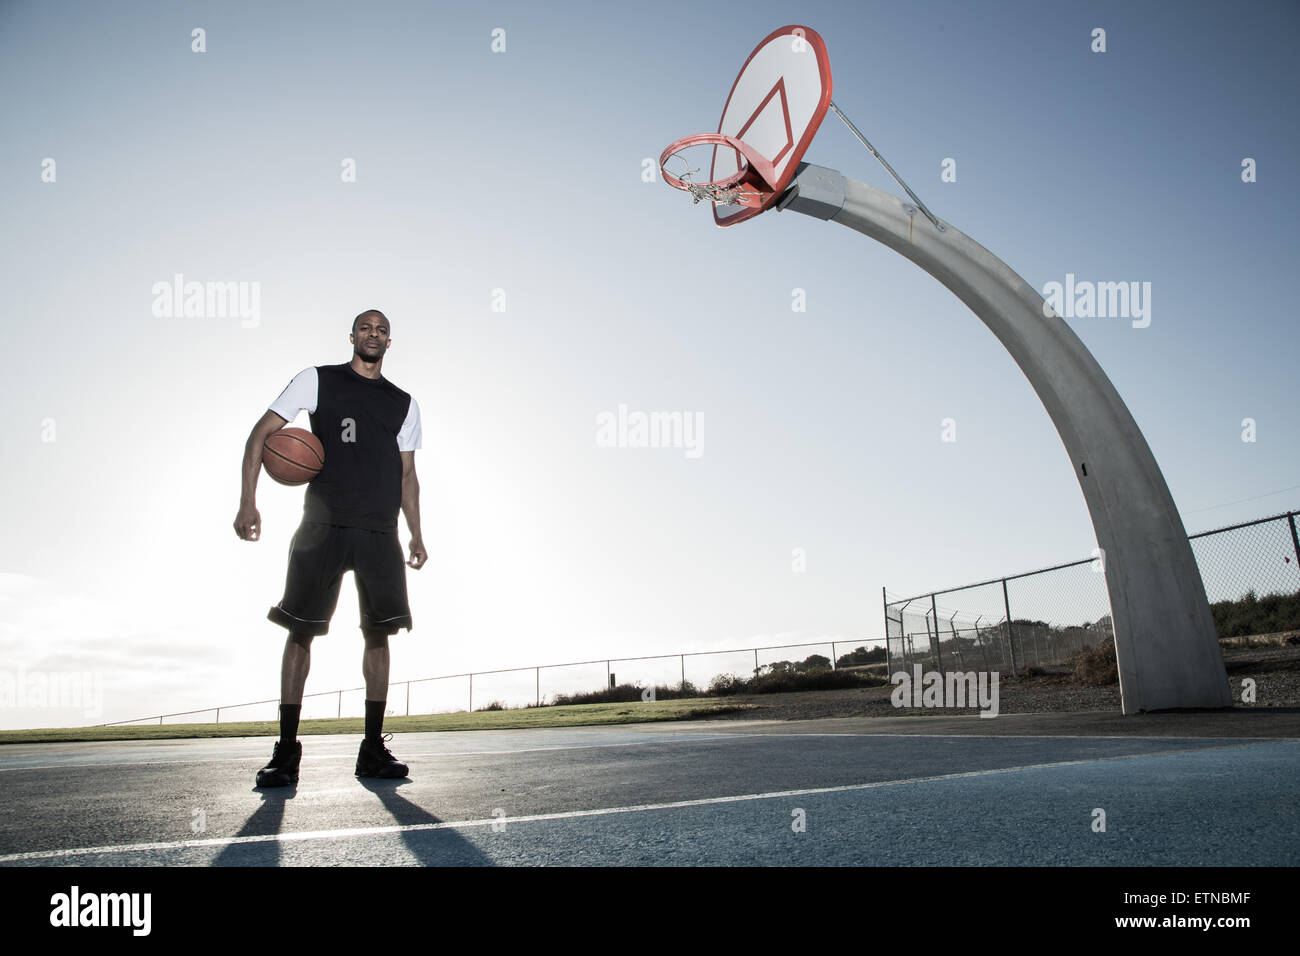 Portrait of a young man holding a basket-ball dans un parc, Los Angeles, Californie, USA Banque D'Images